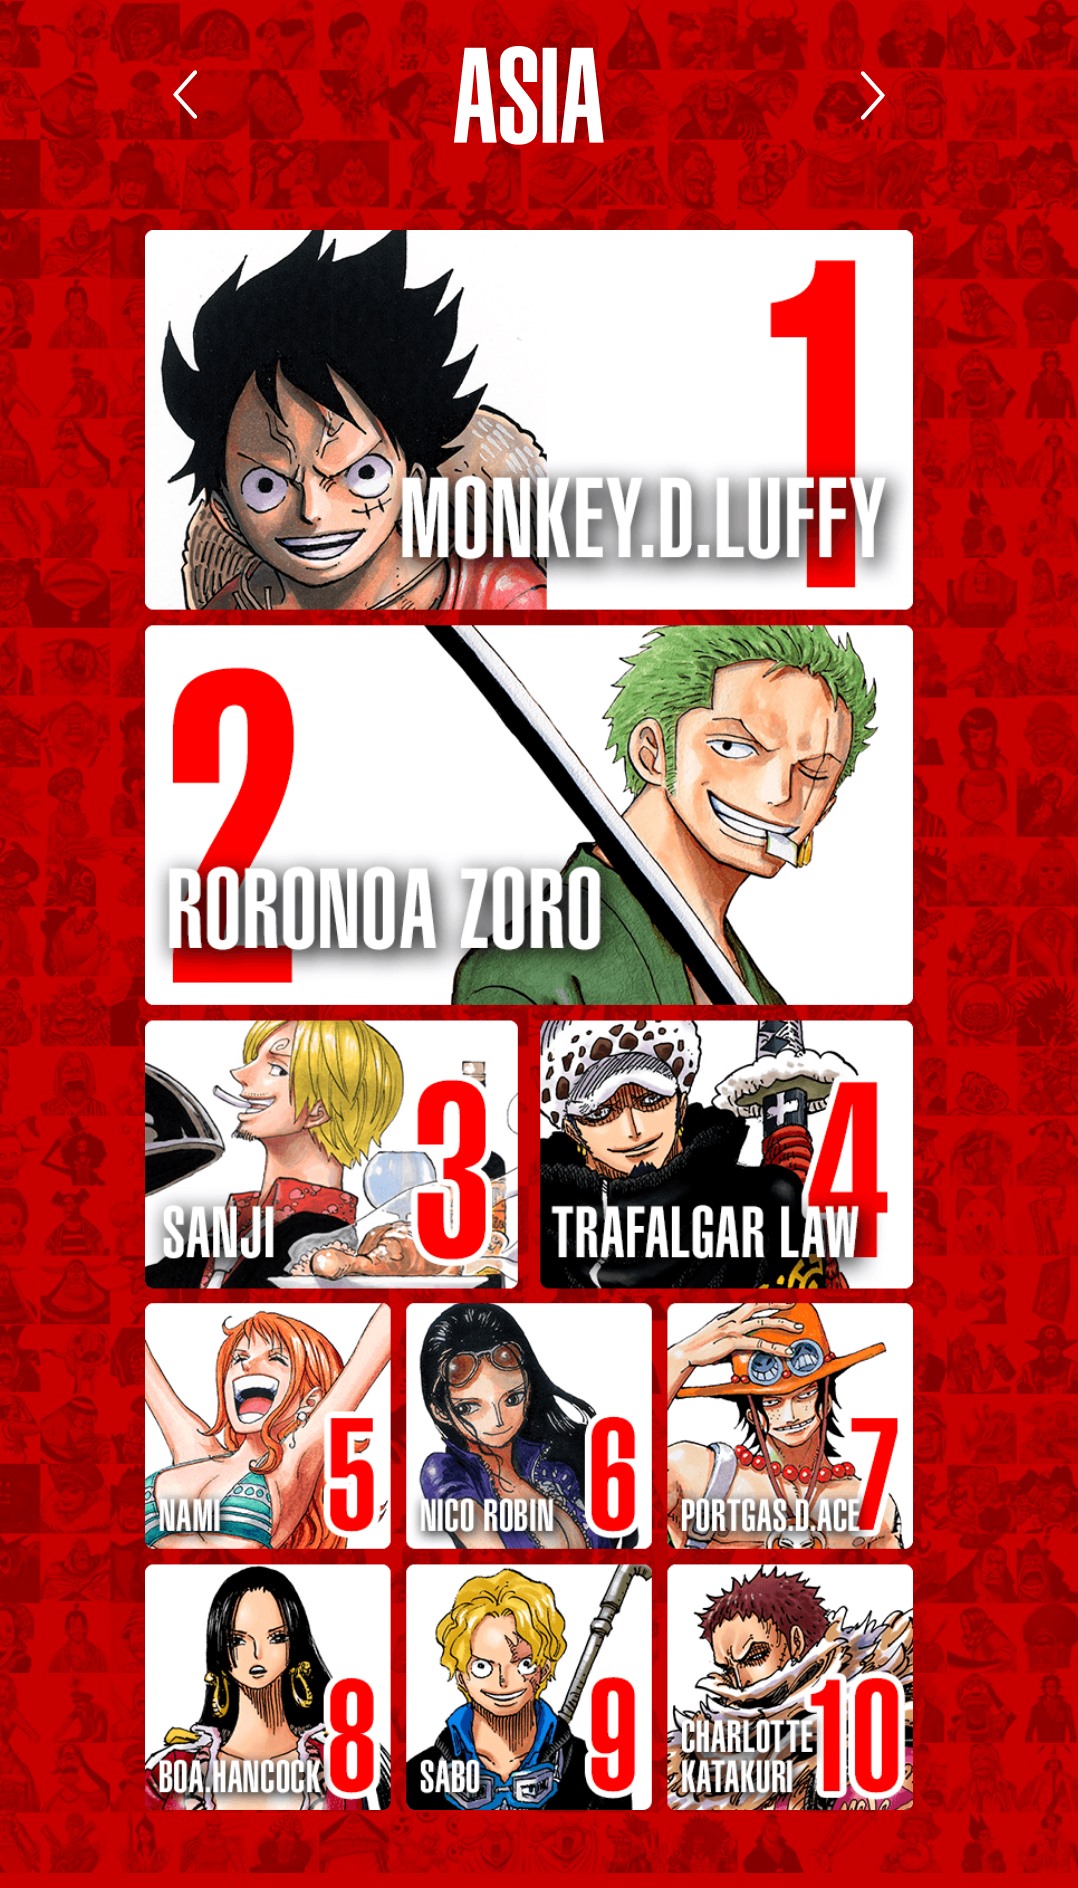 Trong One Piece, mỗi người đều có một nhân vật yêu thích riêng. Có thể là Luffy, Zoro, Sanji, Robin, hay chính những nhân vật phản diện. Hãy xem hình ảnh của nhân vật yêu thích của bạn và cùng nhau chia sẻ niềm hạnh phúc và đam mê với cộng đồng fan One Piece!